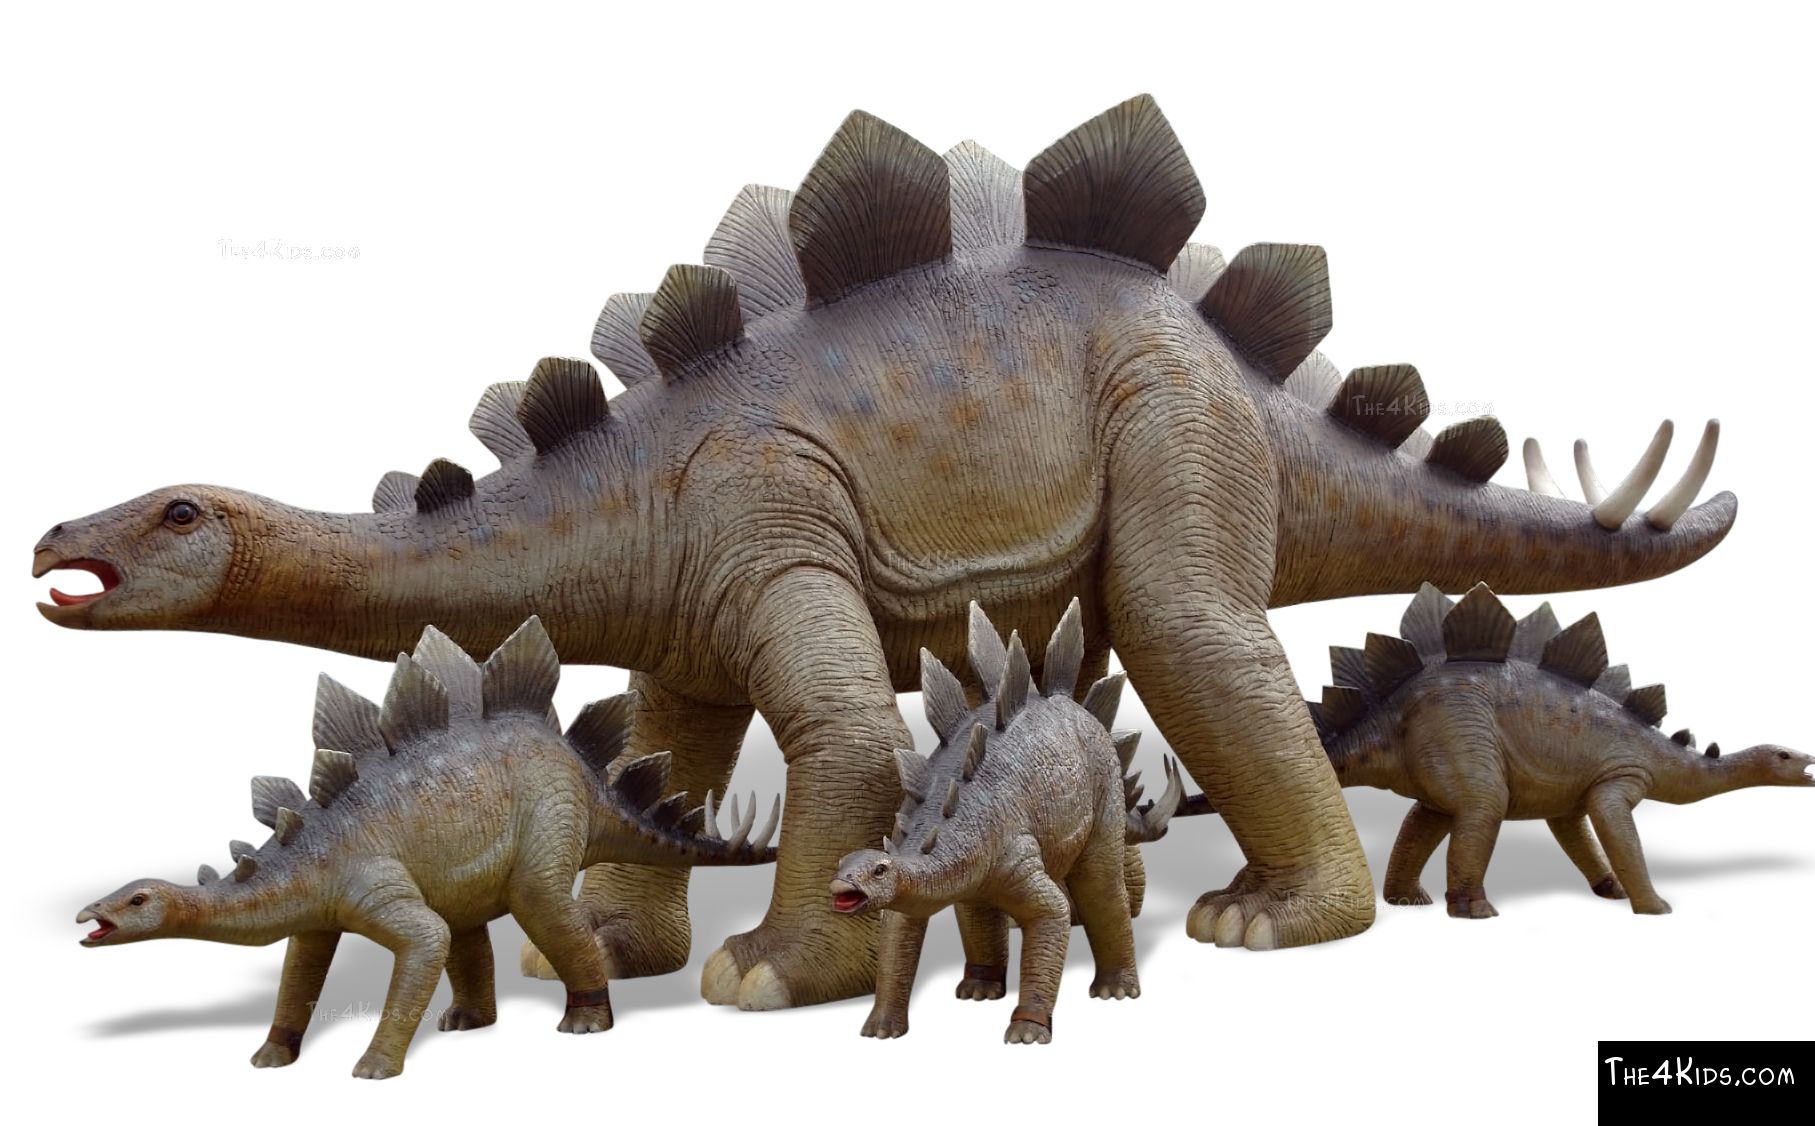 Adult Stegosaurus  The 4 Kids